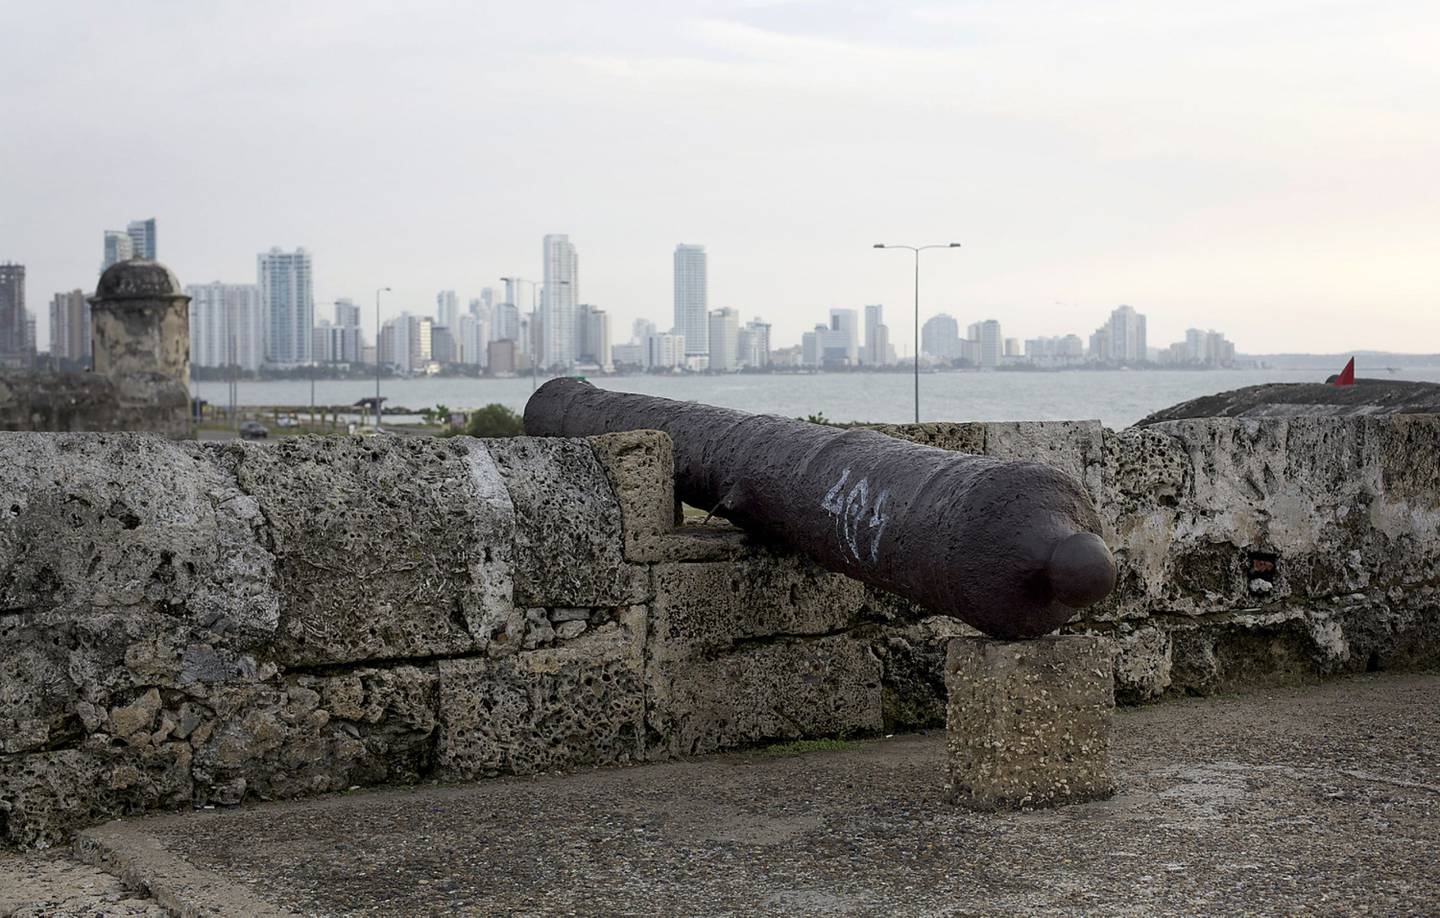 Vista general de la ciudad amurallada - Cartagena.